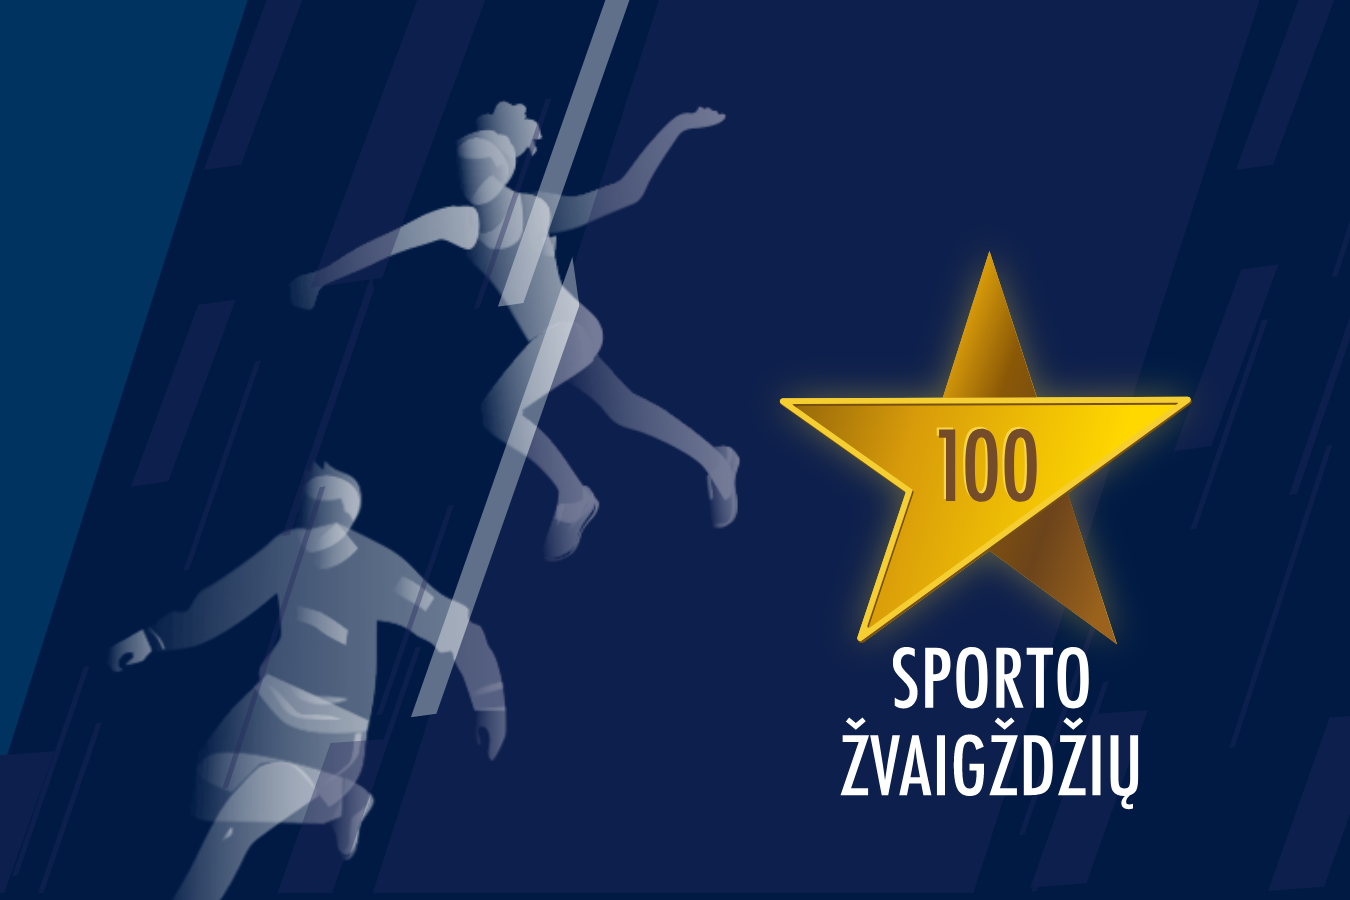 100 sporto žvaigždžių LRT iliustrpng